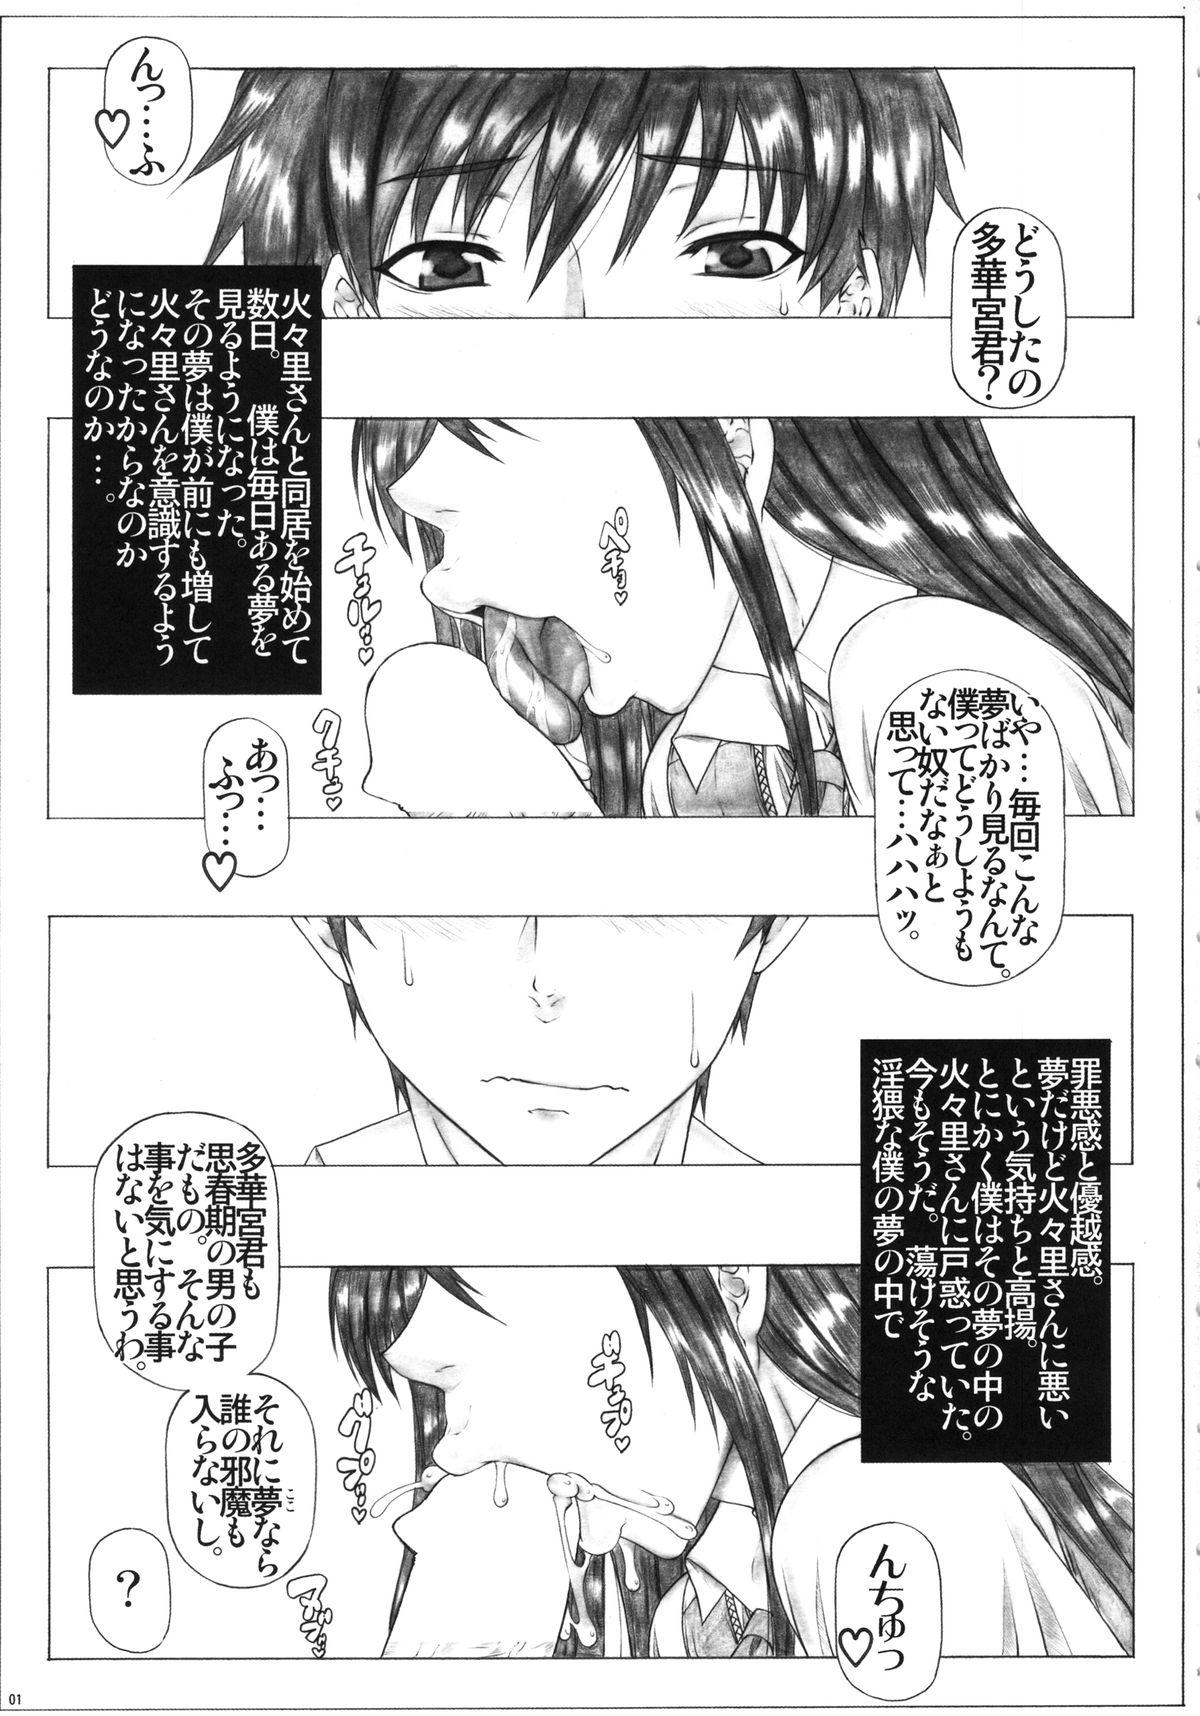 Anime Takamiya-kun to Kikenbi no Majo - Witch craft works Bigbutt - Page 2